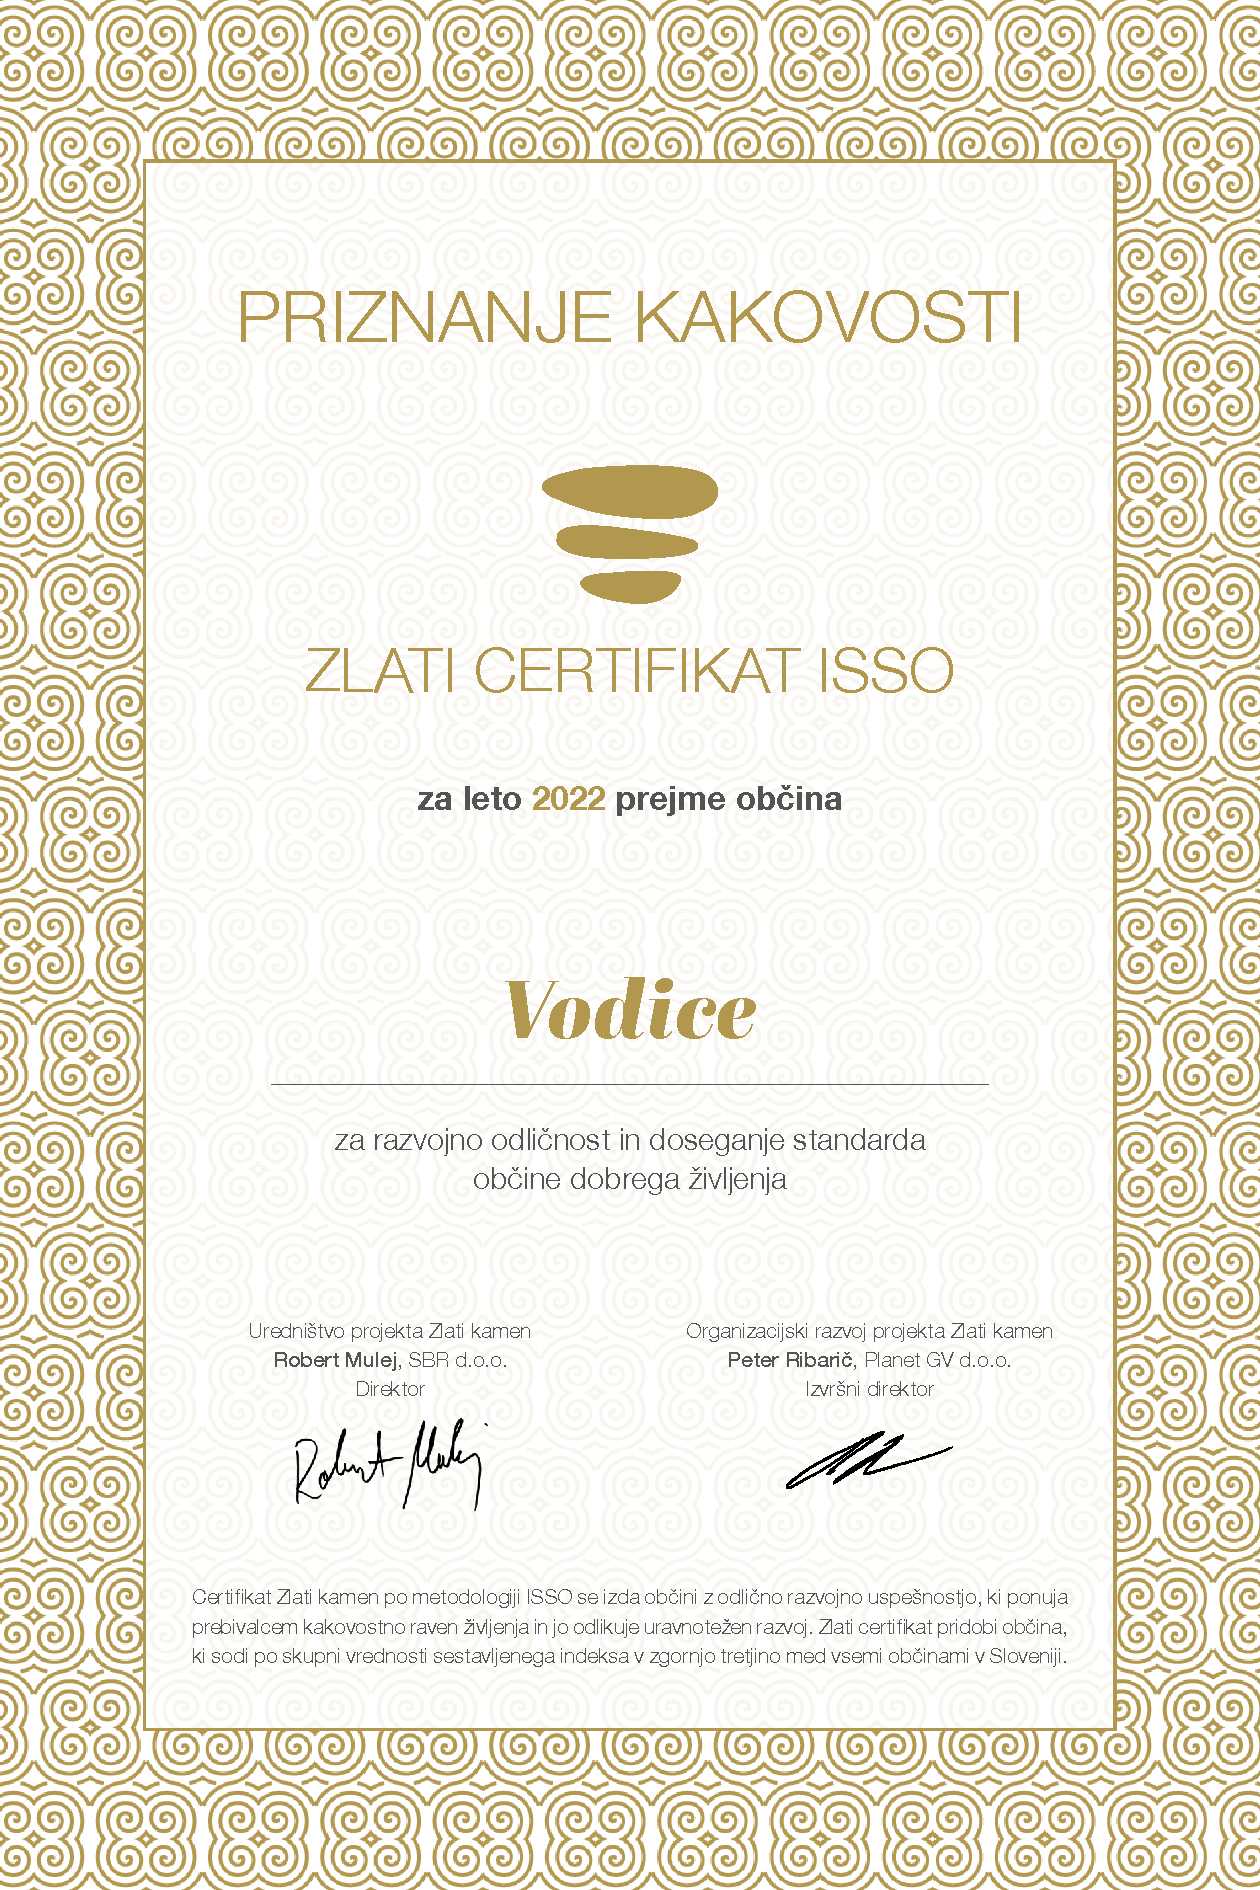 ISSO Zlati certifikat 2022_Občina Vodice (002).jpg